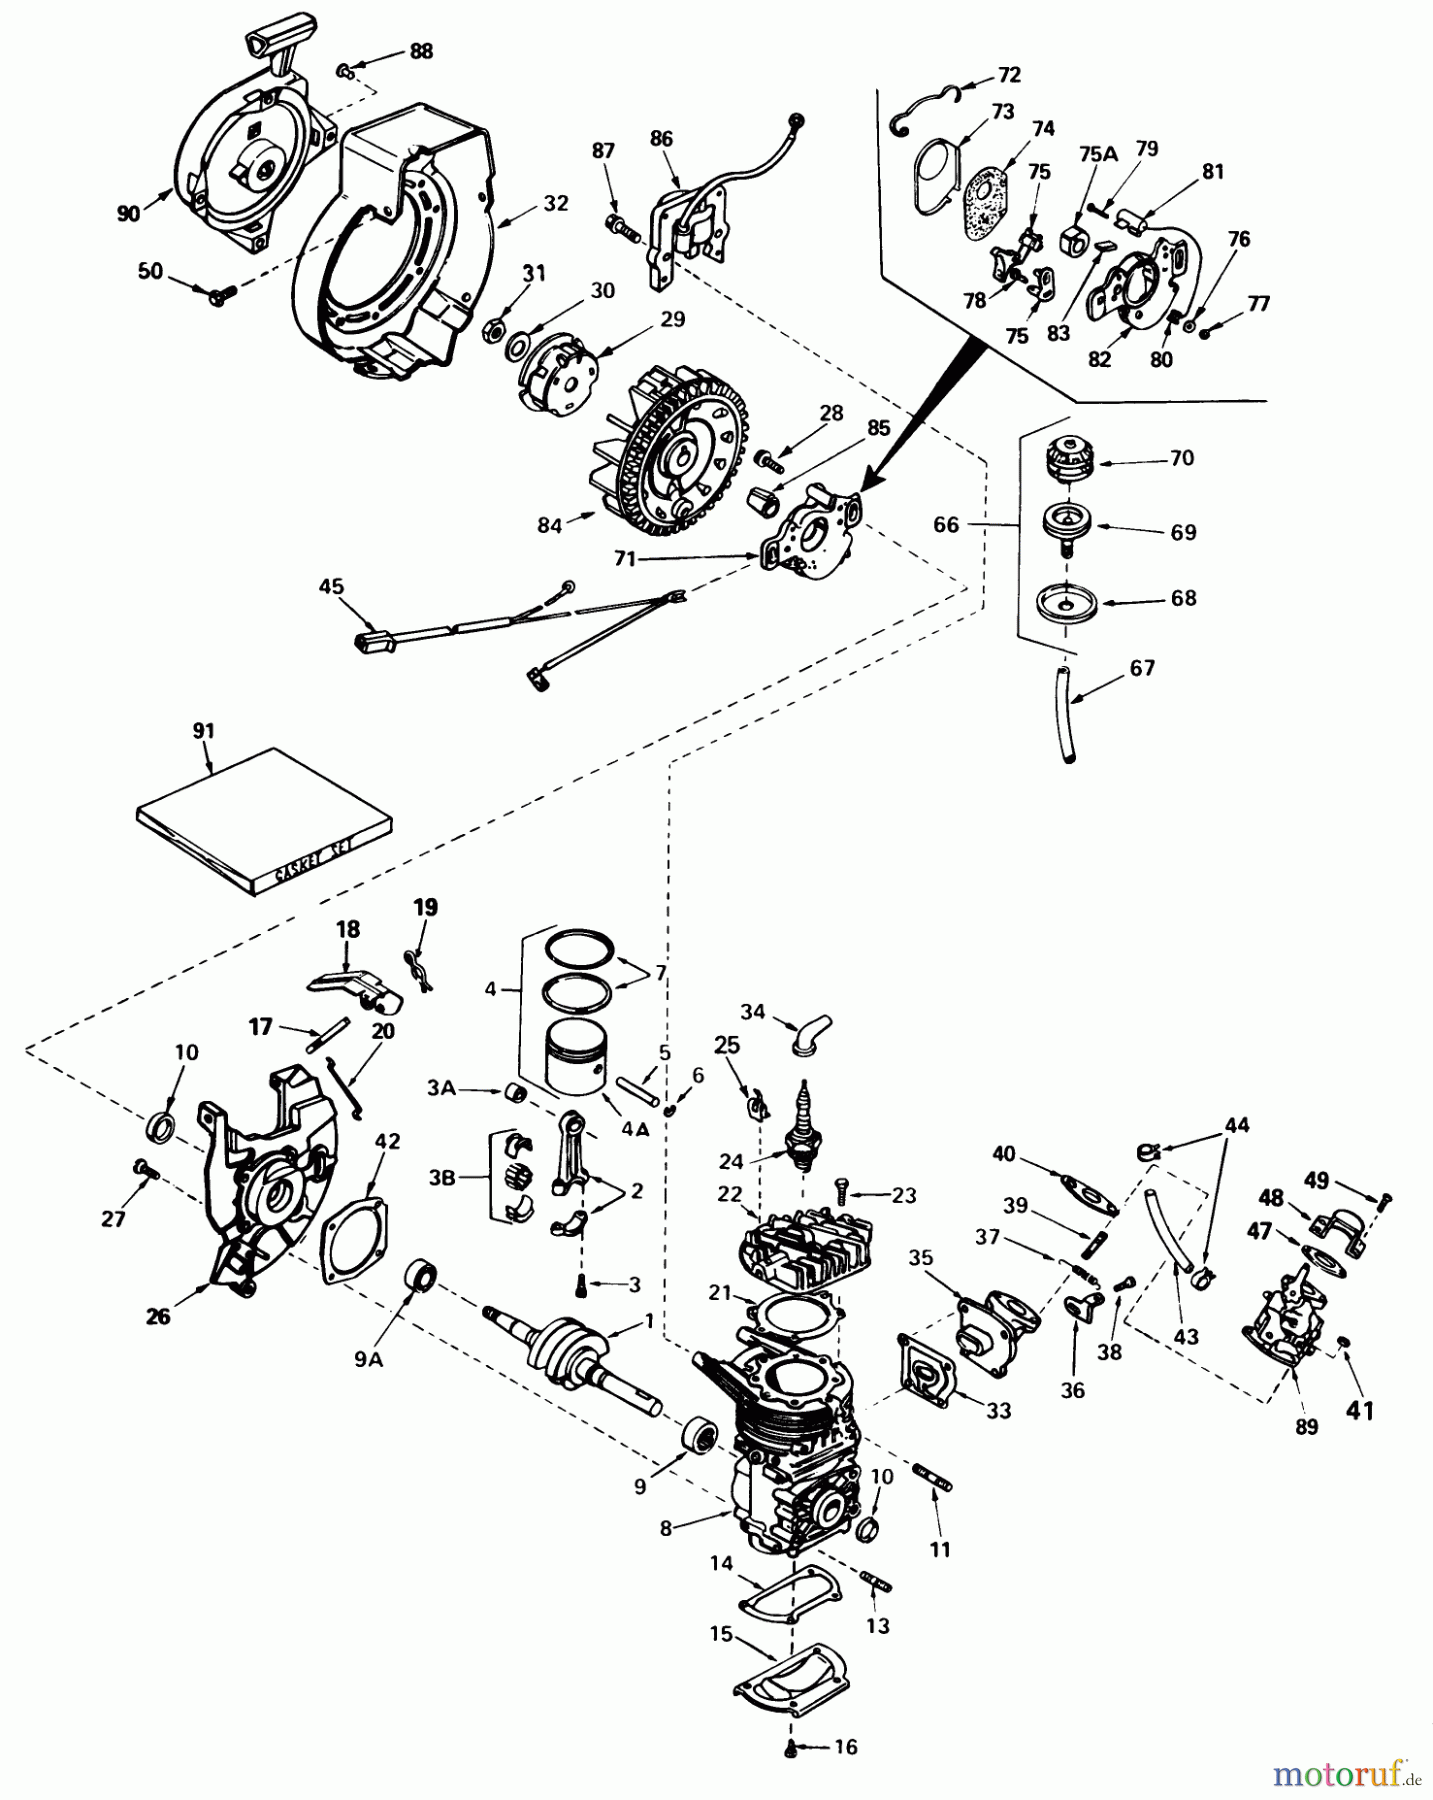  Toro Neu Snow Blowers/Snow Throwers Seite 1 38235 (S-200) - Toro S-200 Snowthrower, 1983 (3000001-3999999) ENGINE ASSEMBLY ENGINE TECUMSEH MODEL NO. AH520 TYPE 1603B